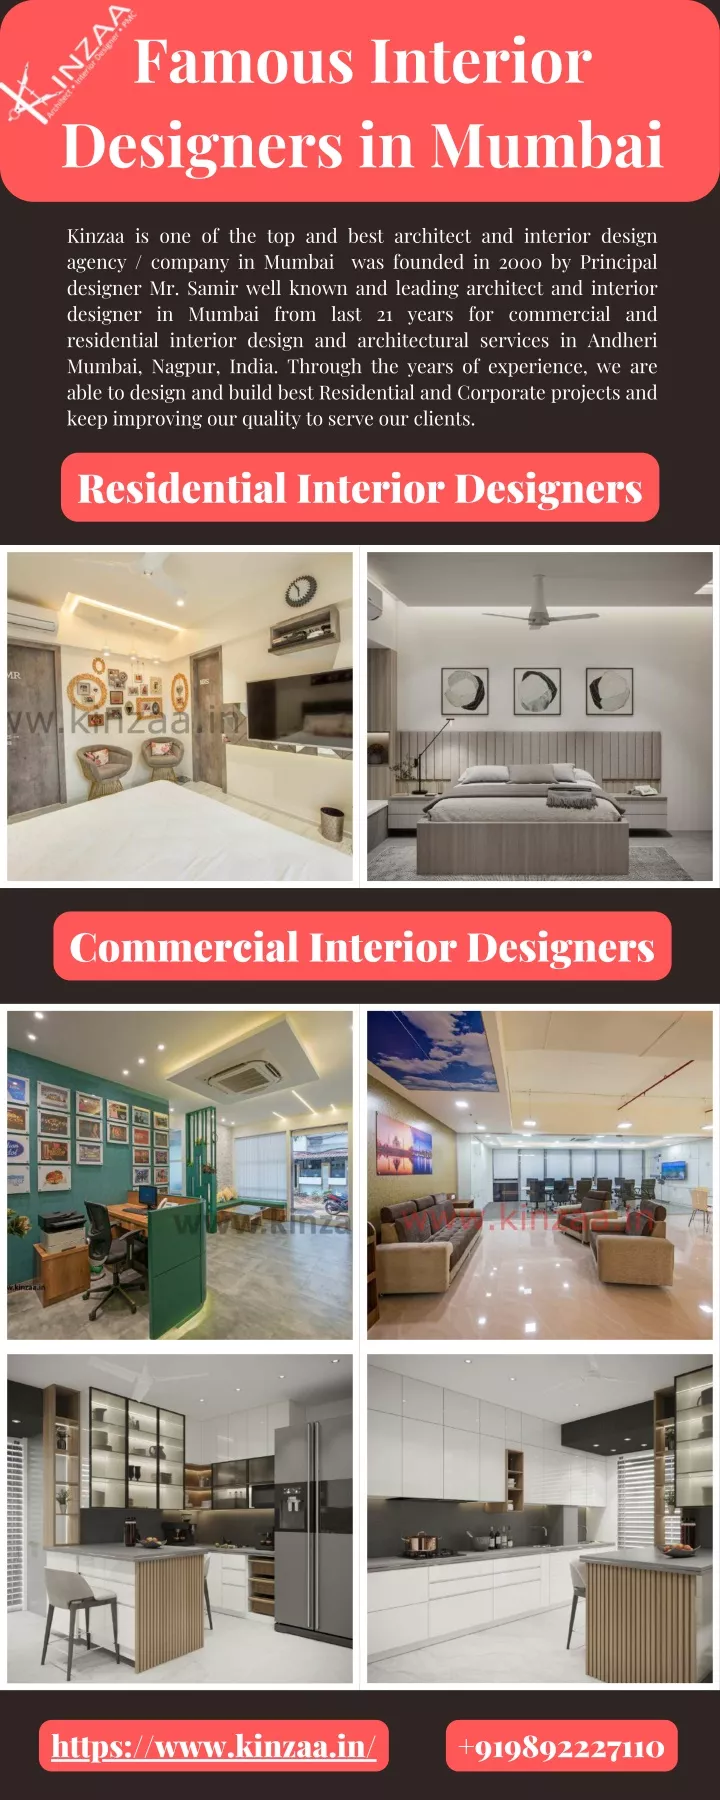 famous interior designers in mumbai